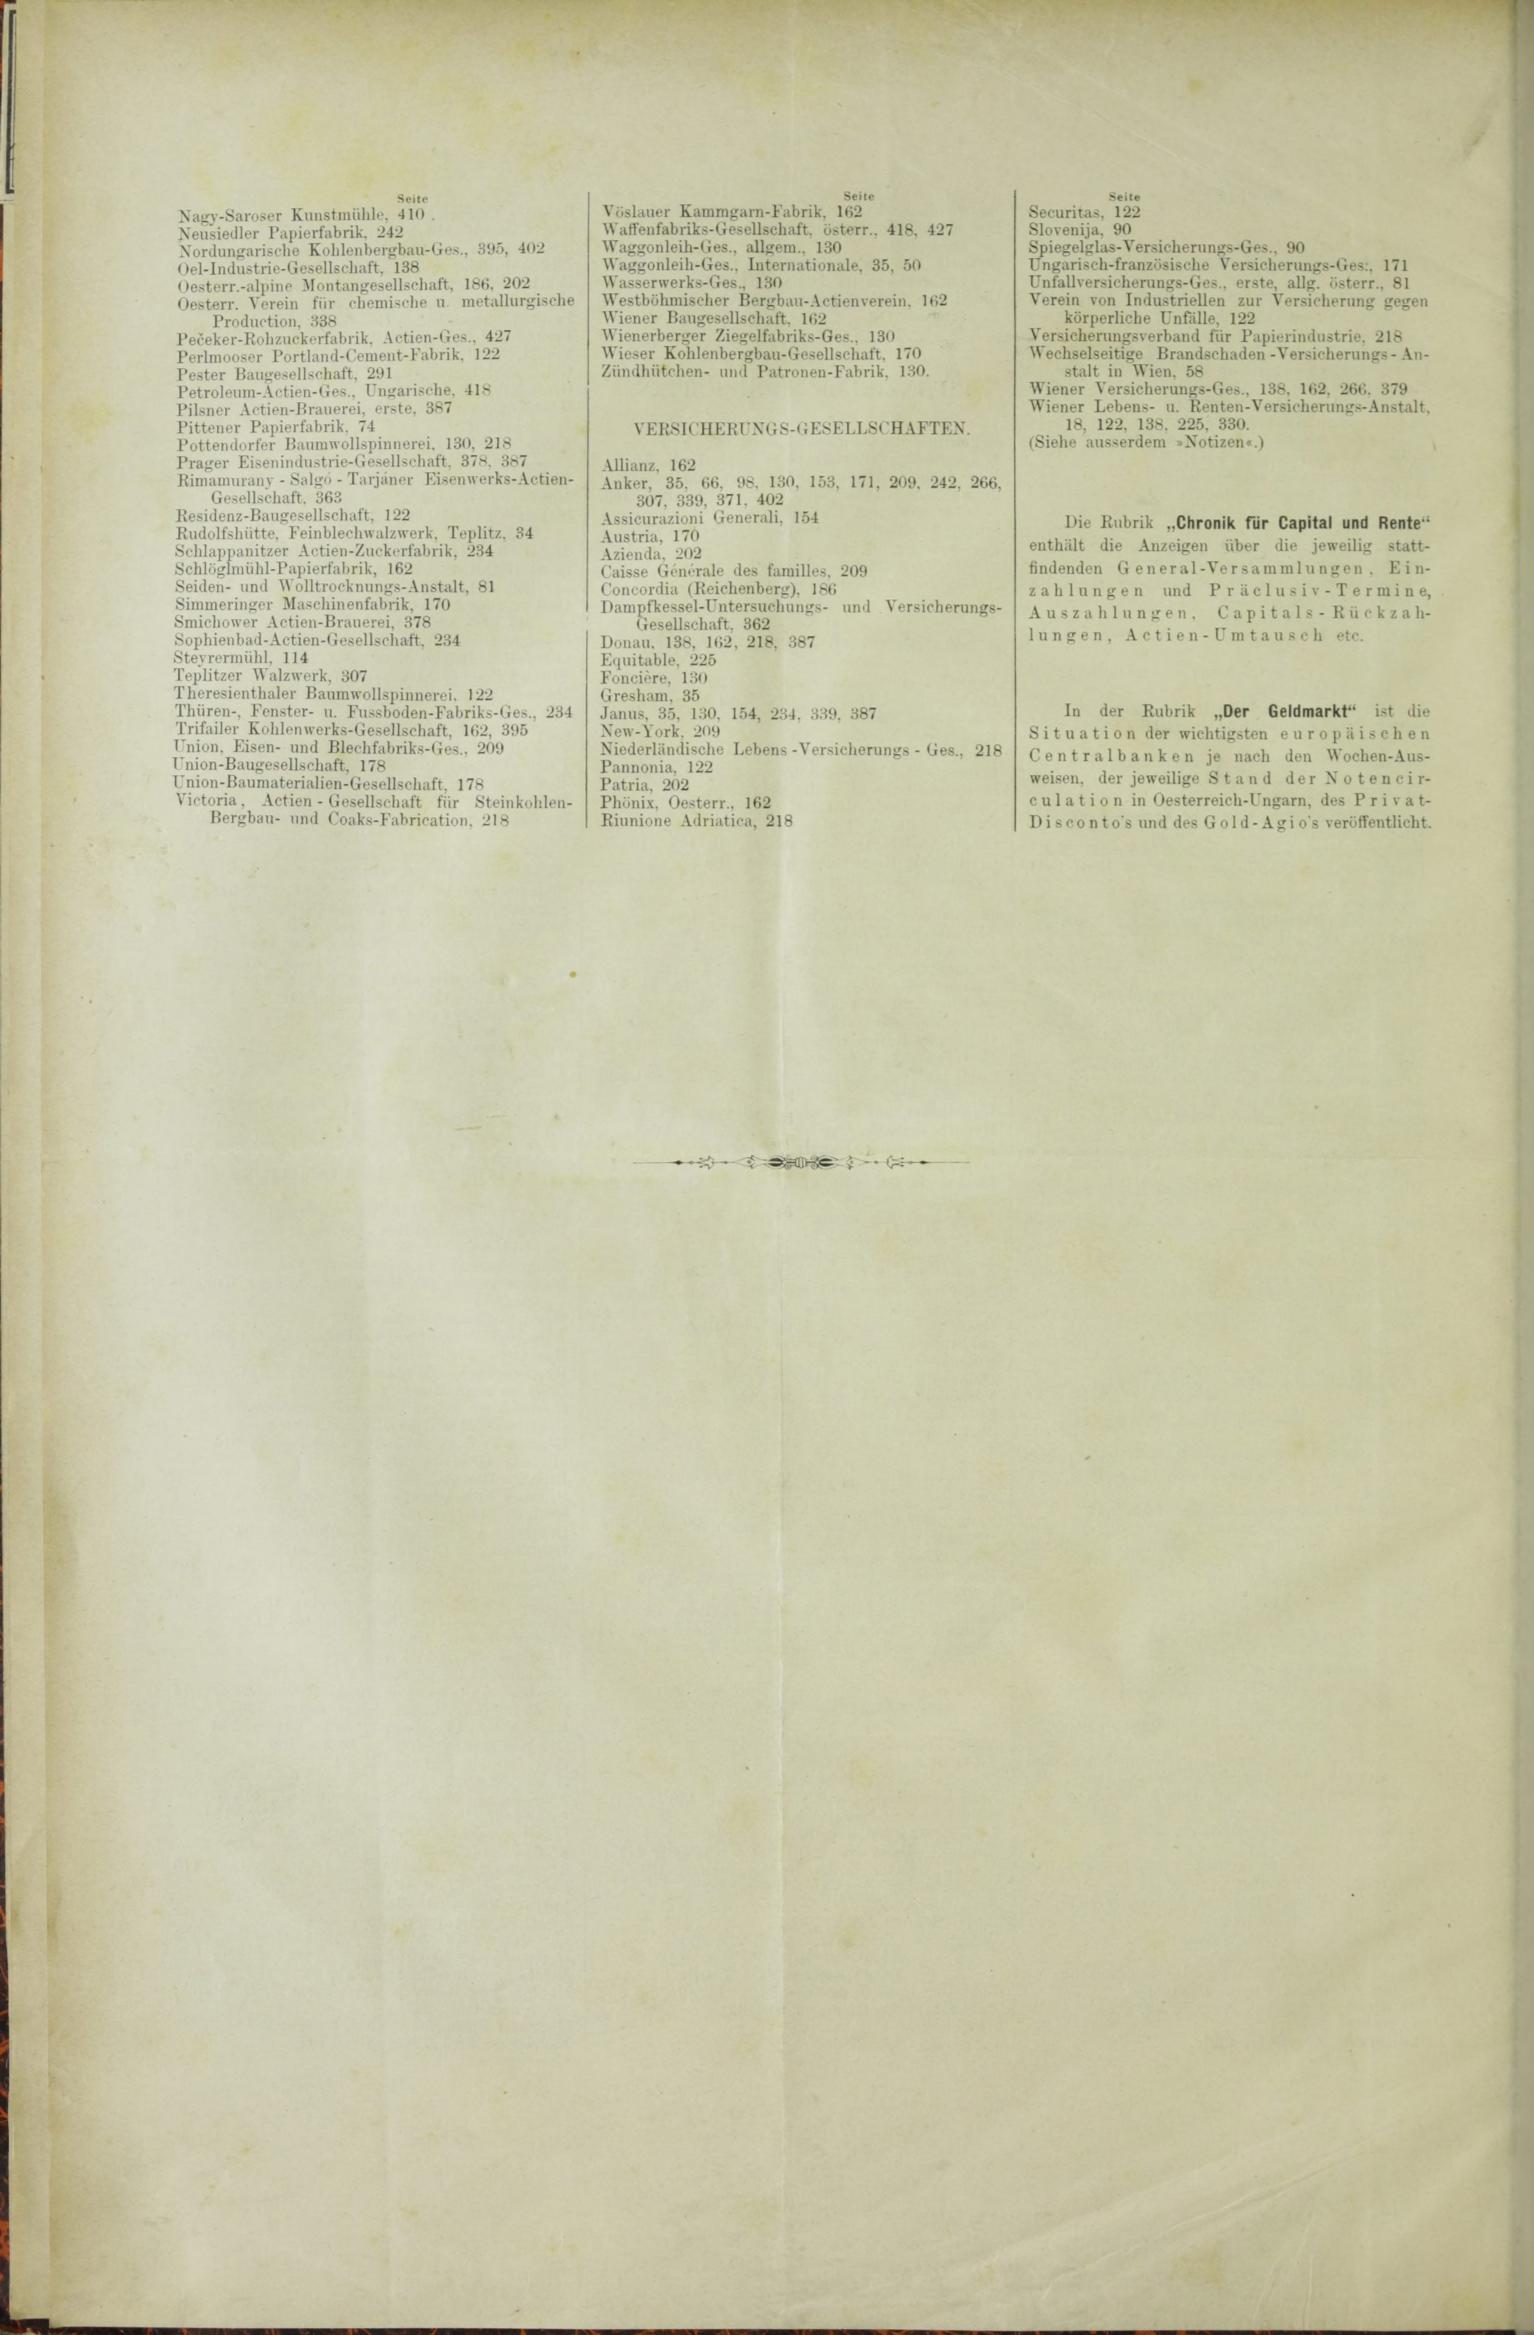 Der Tresor 24.12.1885 - Seite 12